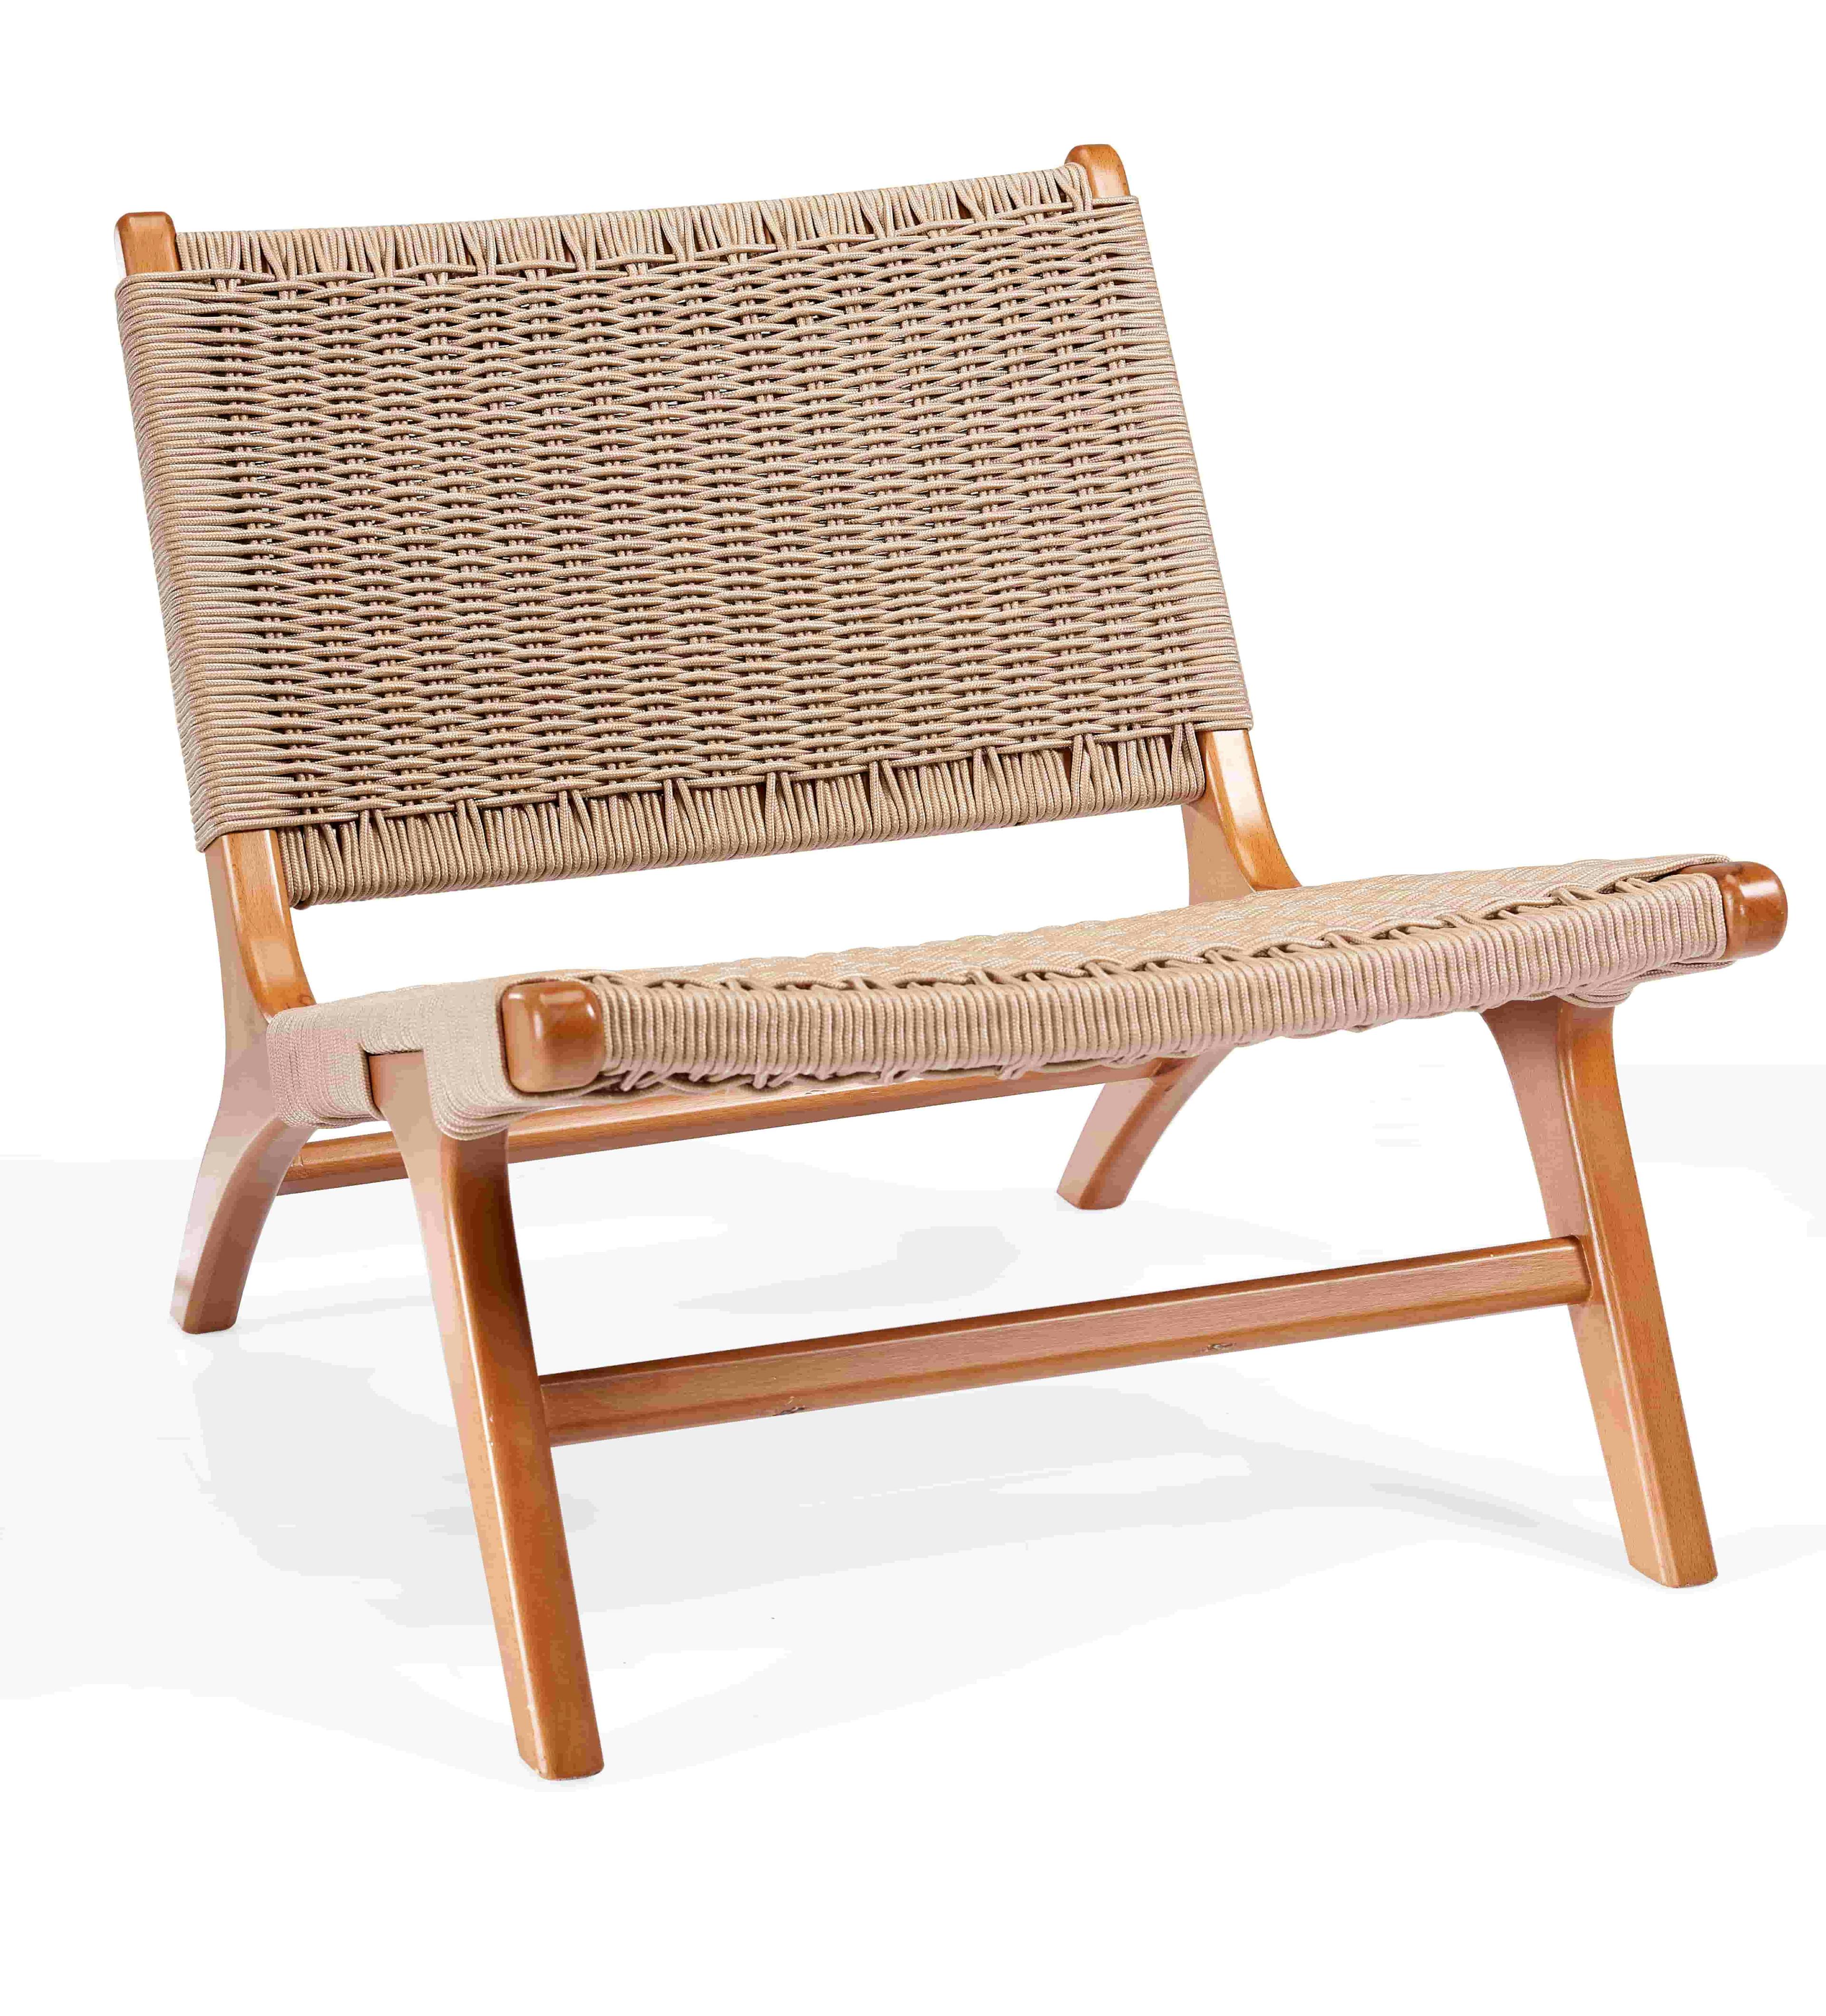 كرسي بوهو منسوج من خشب الزان الطبيعي 0